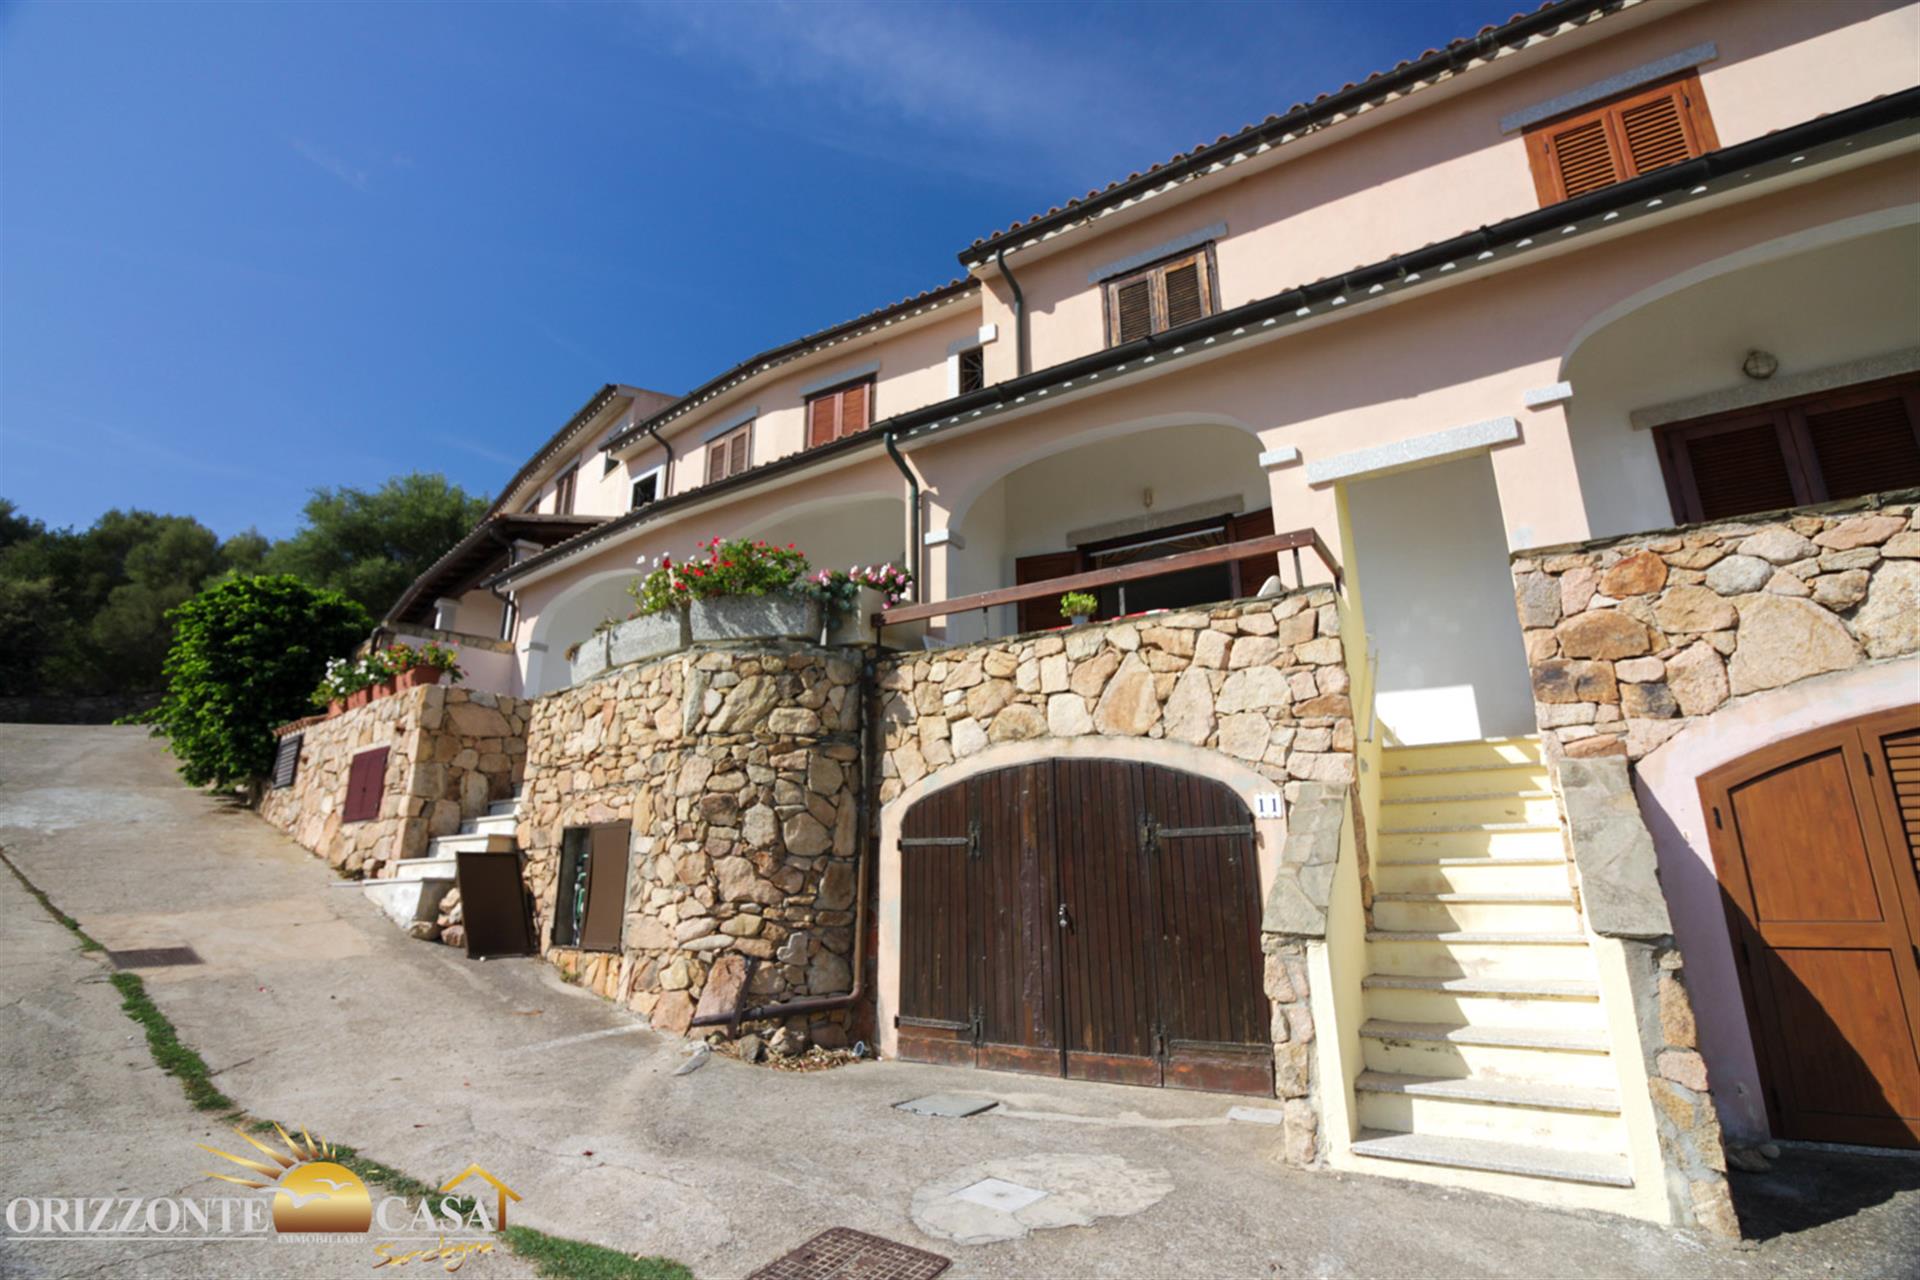 Sardinien Budoni - Dreizimmervilla mit Meerblick auf zwei Ebenen in Ludduì